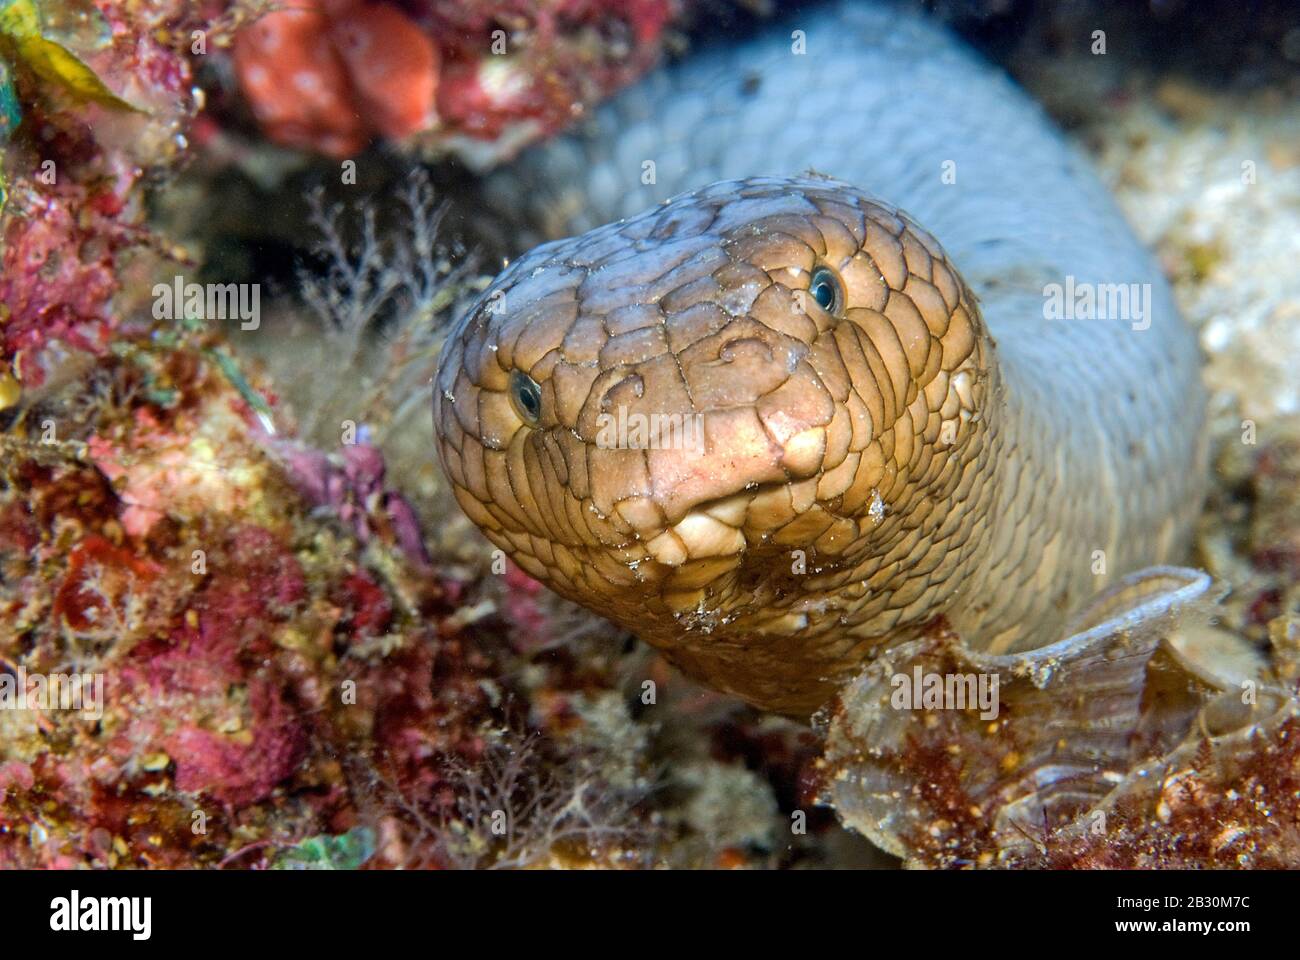 Serpent de mer d'olive ou serpent de mer d'or (Aipysurus laevis), extrêmement toxique, Papouasie-Nouvelle-Guinée Banque D'Images